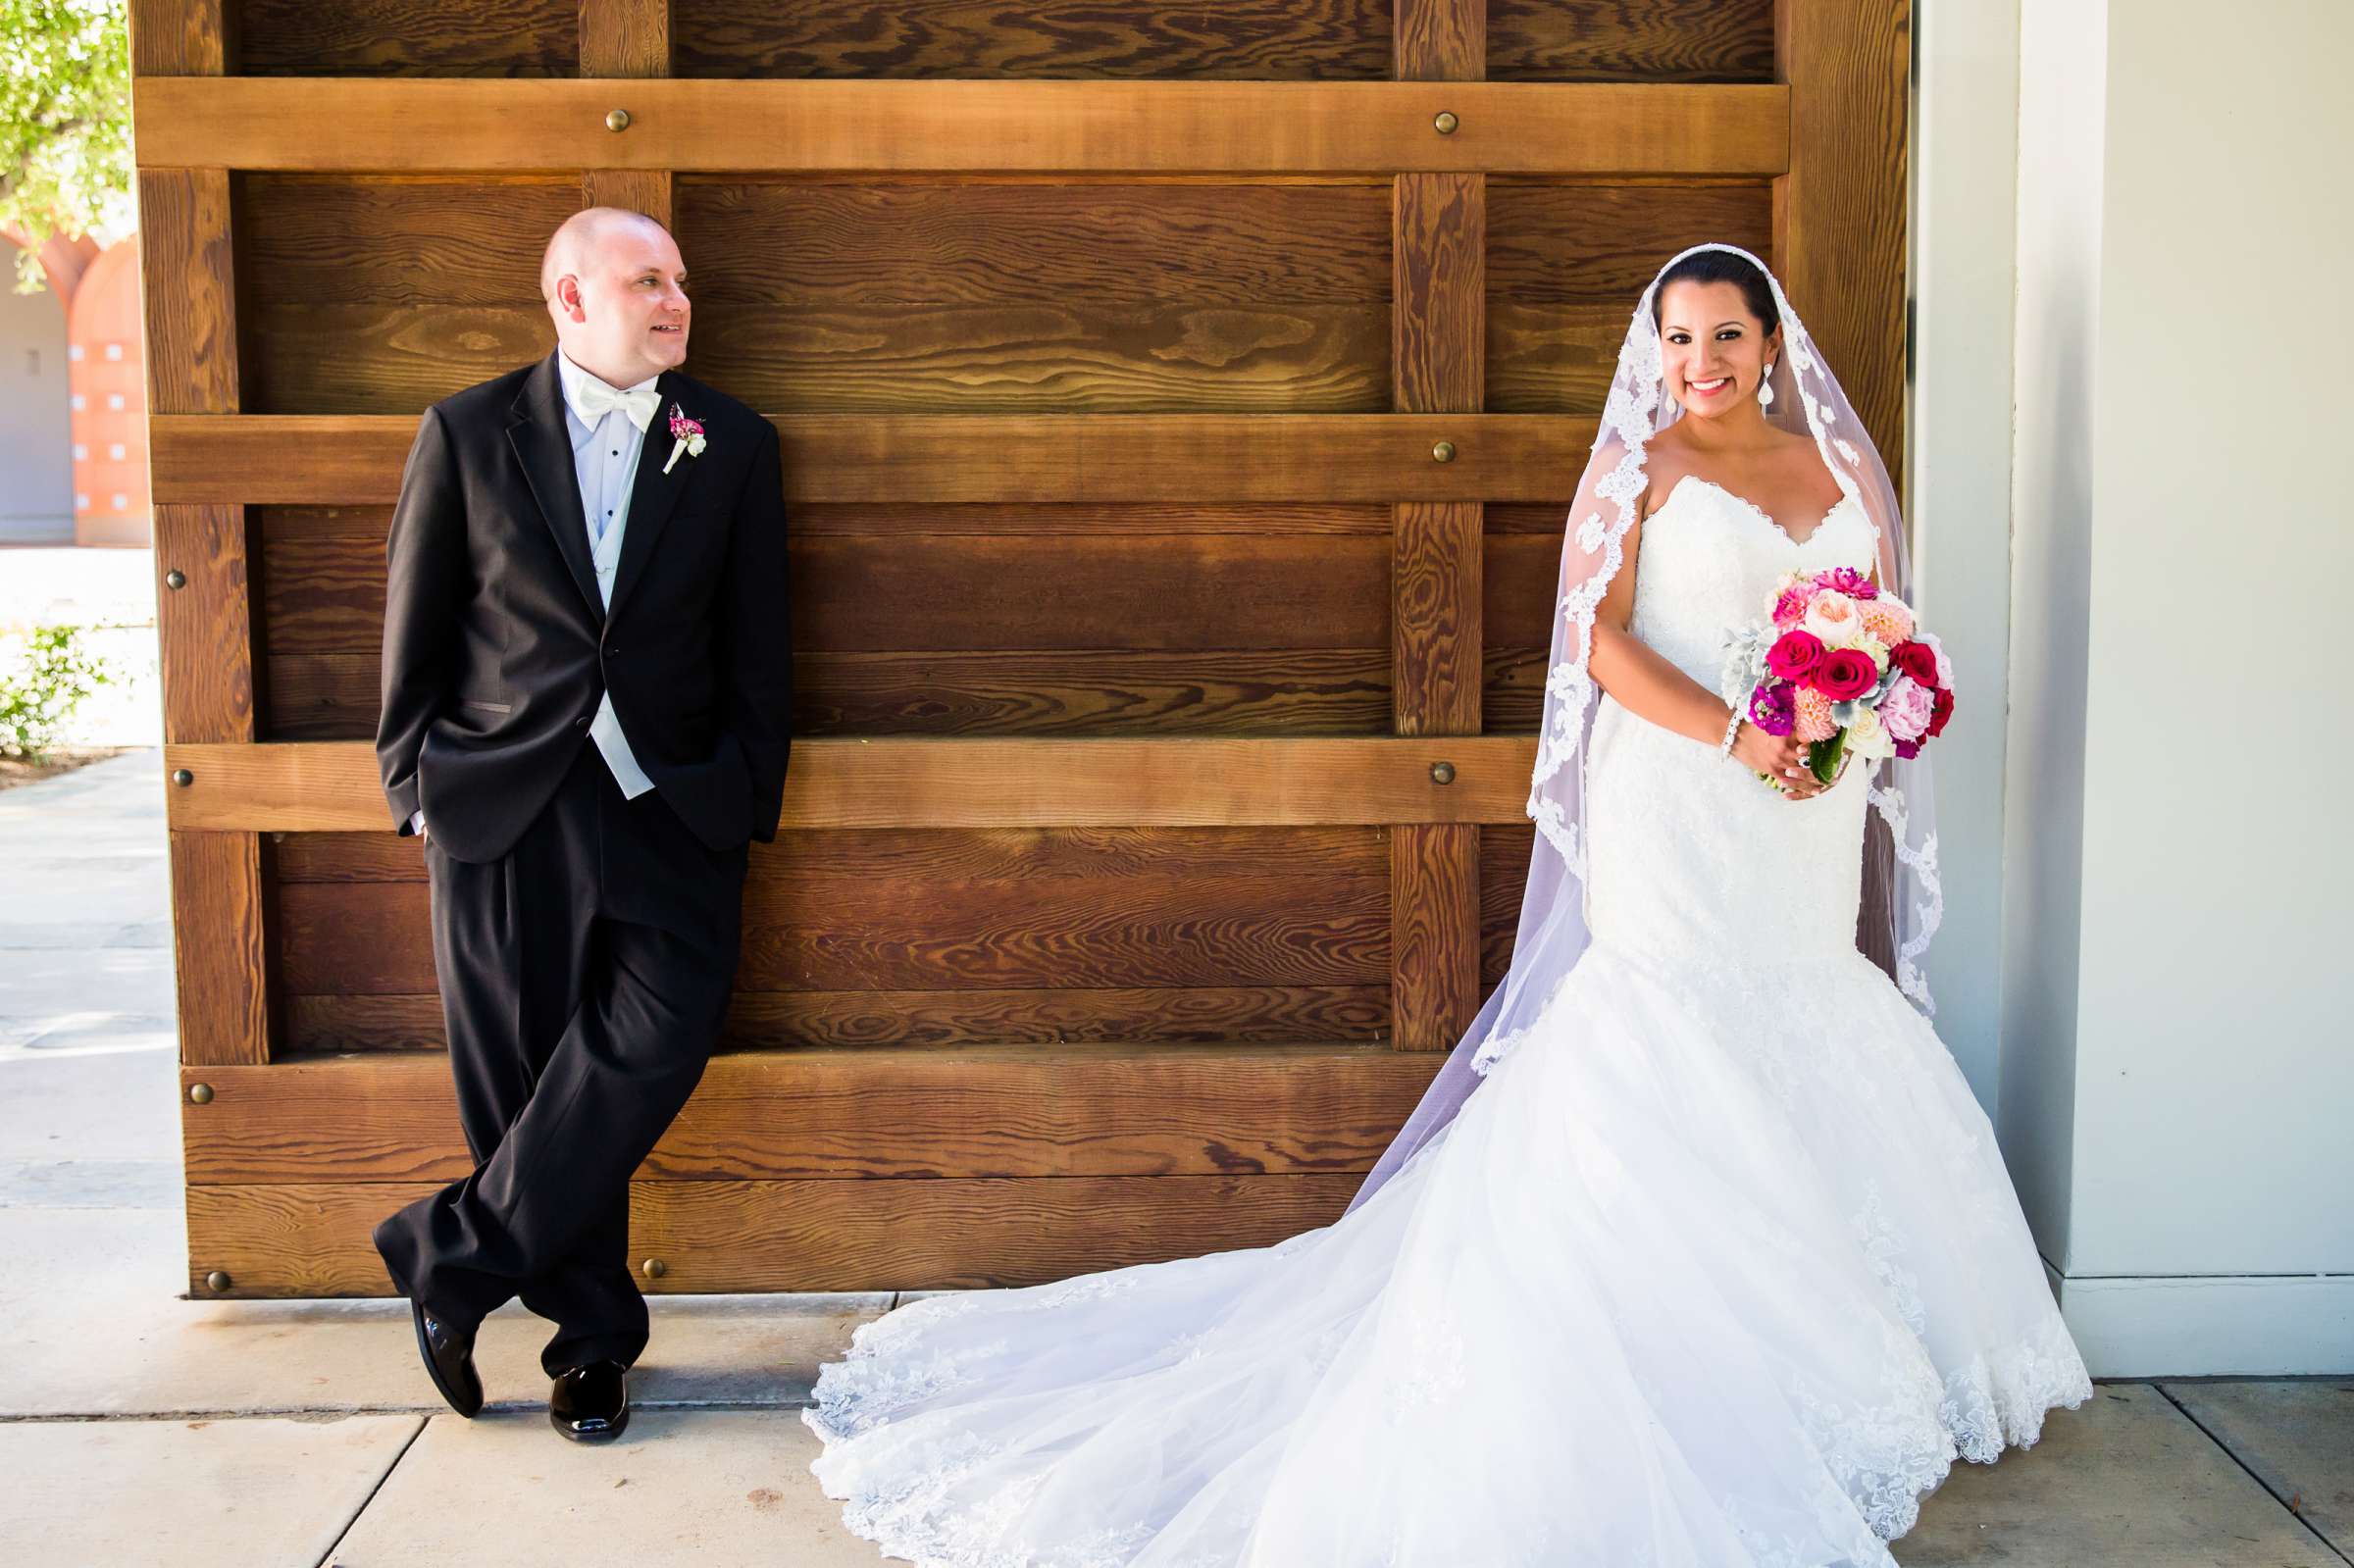 Lomas Santa Fe Country Club Wedding, Sandra and John Wedding Photo #5 by True Photography